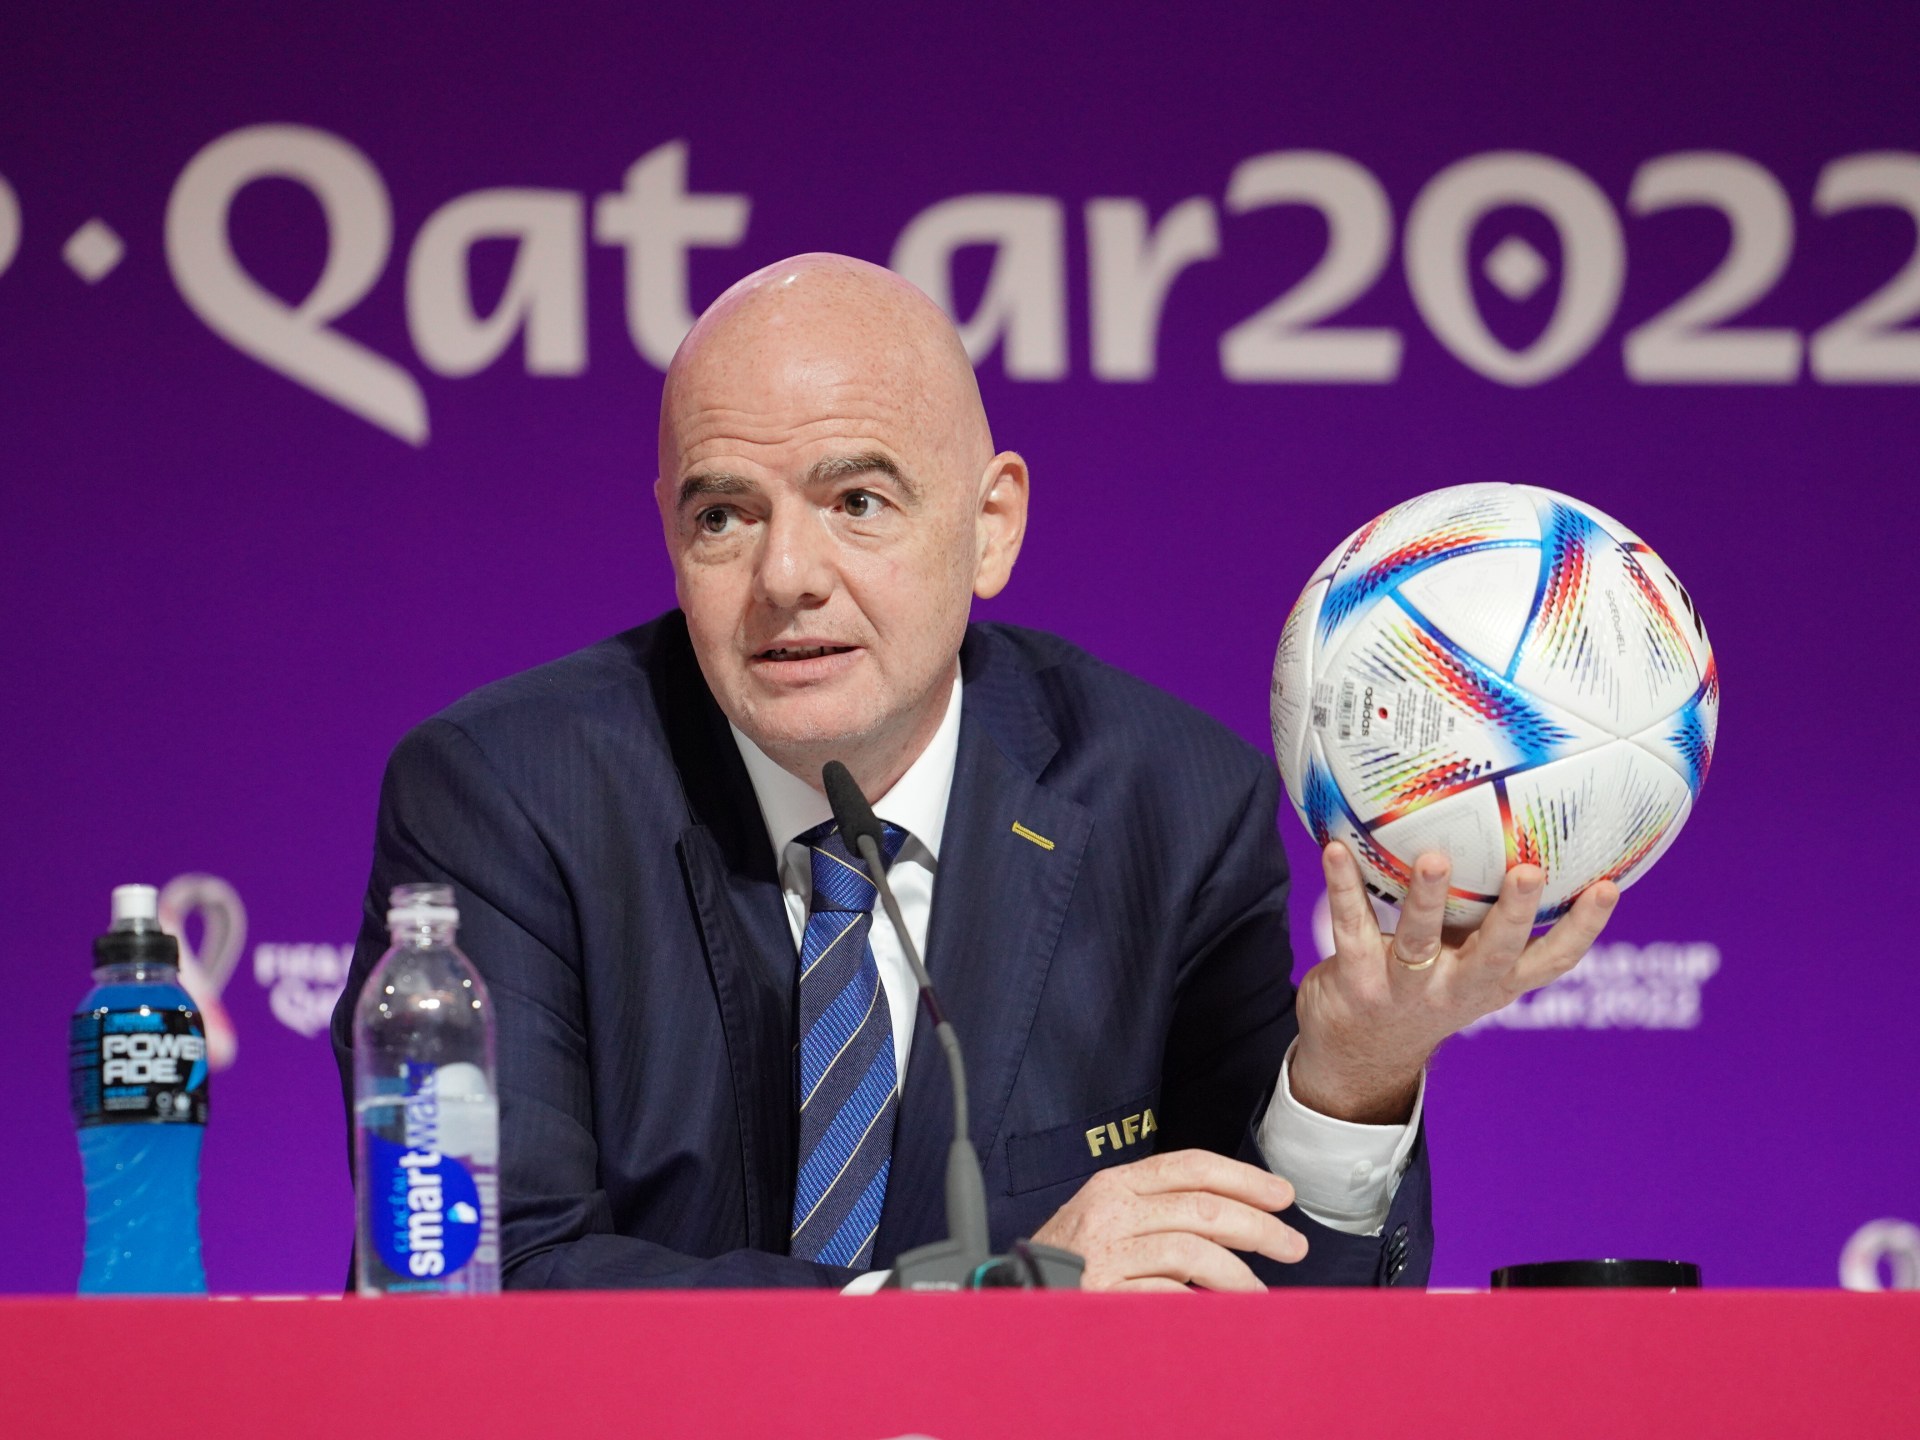 Ketua FIFA ingin wasit menghentikan pertandingan sepak bola saat rasisme terjadi |  Berita Rasisme